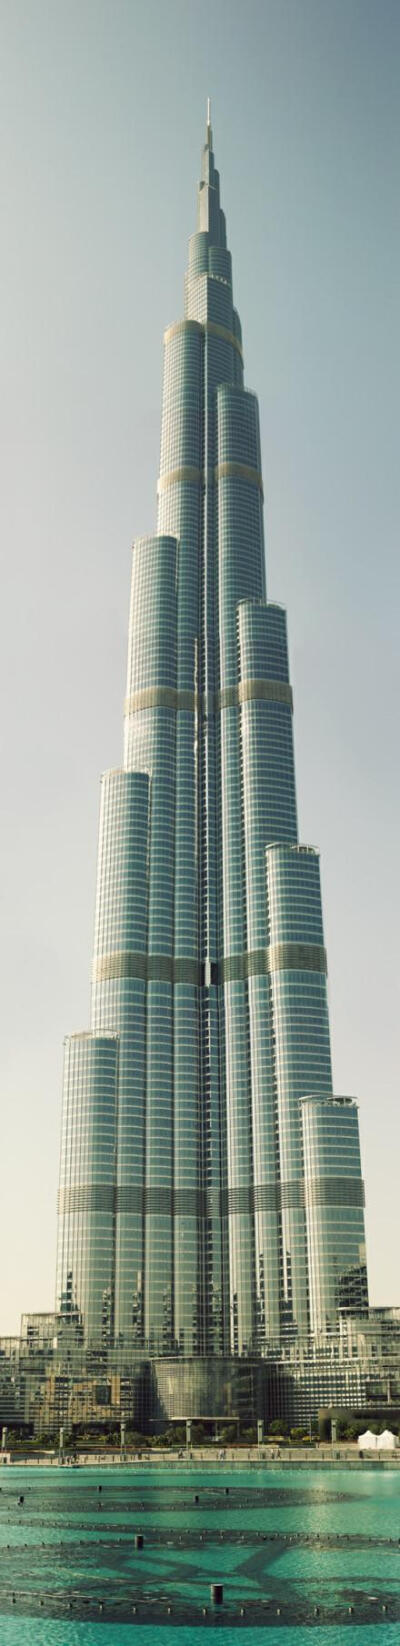 迪拜塔:世界第一高楼!